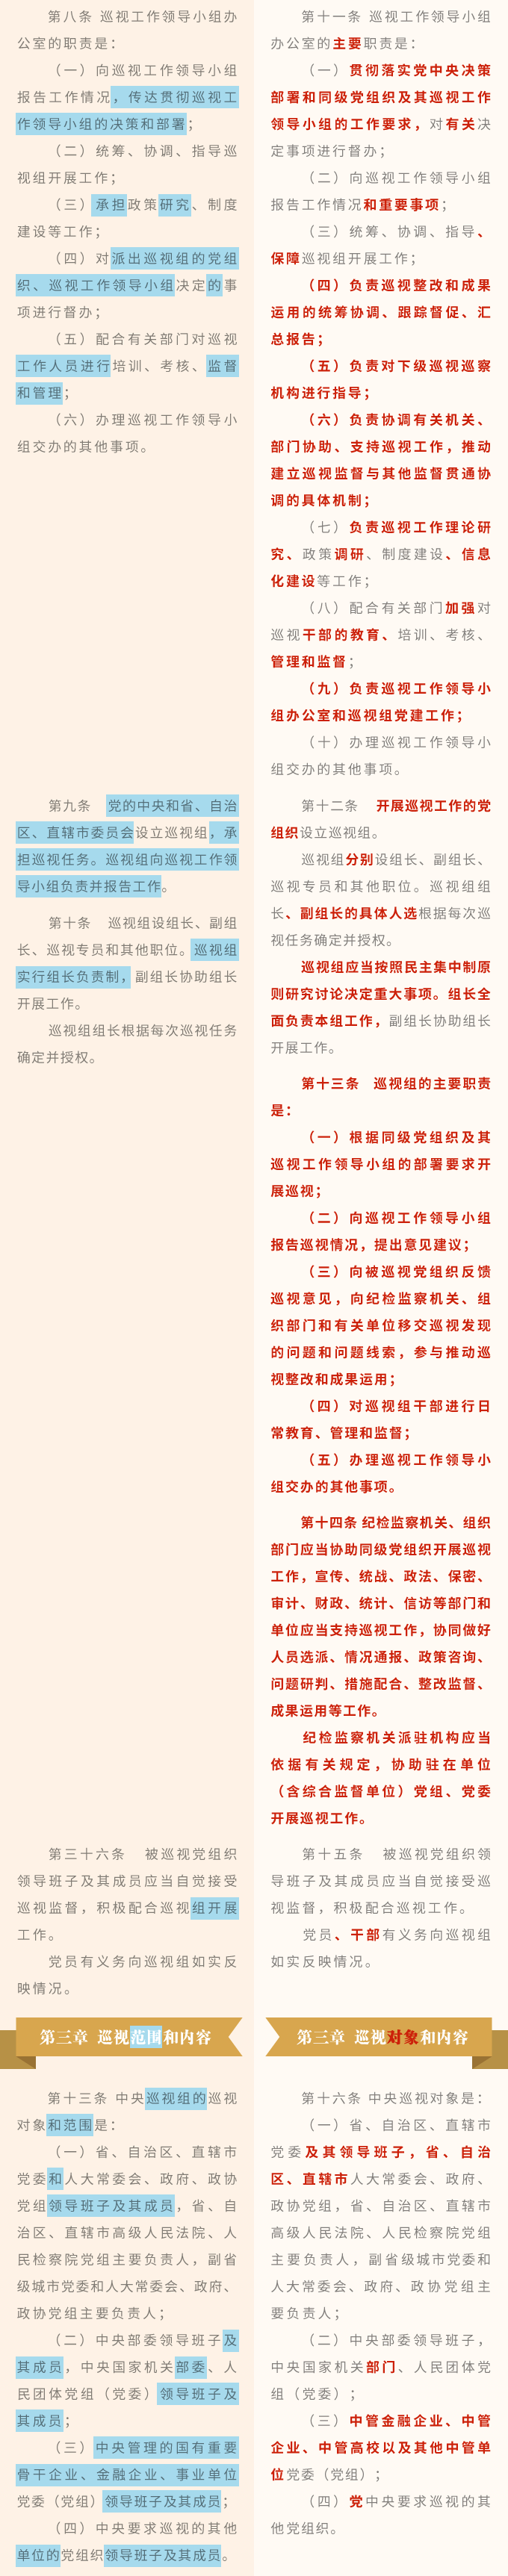 《中国共产党巡视工作条例》修订条文对照表